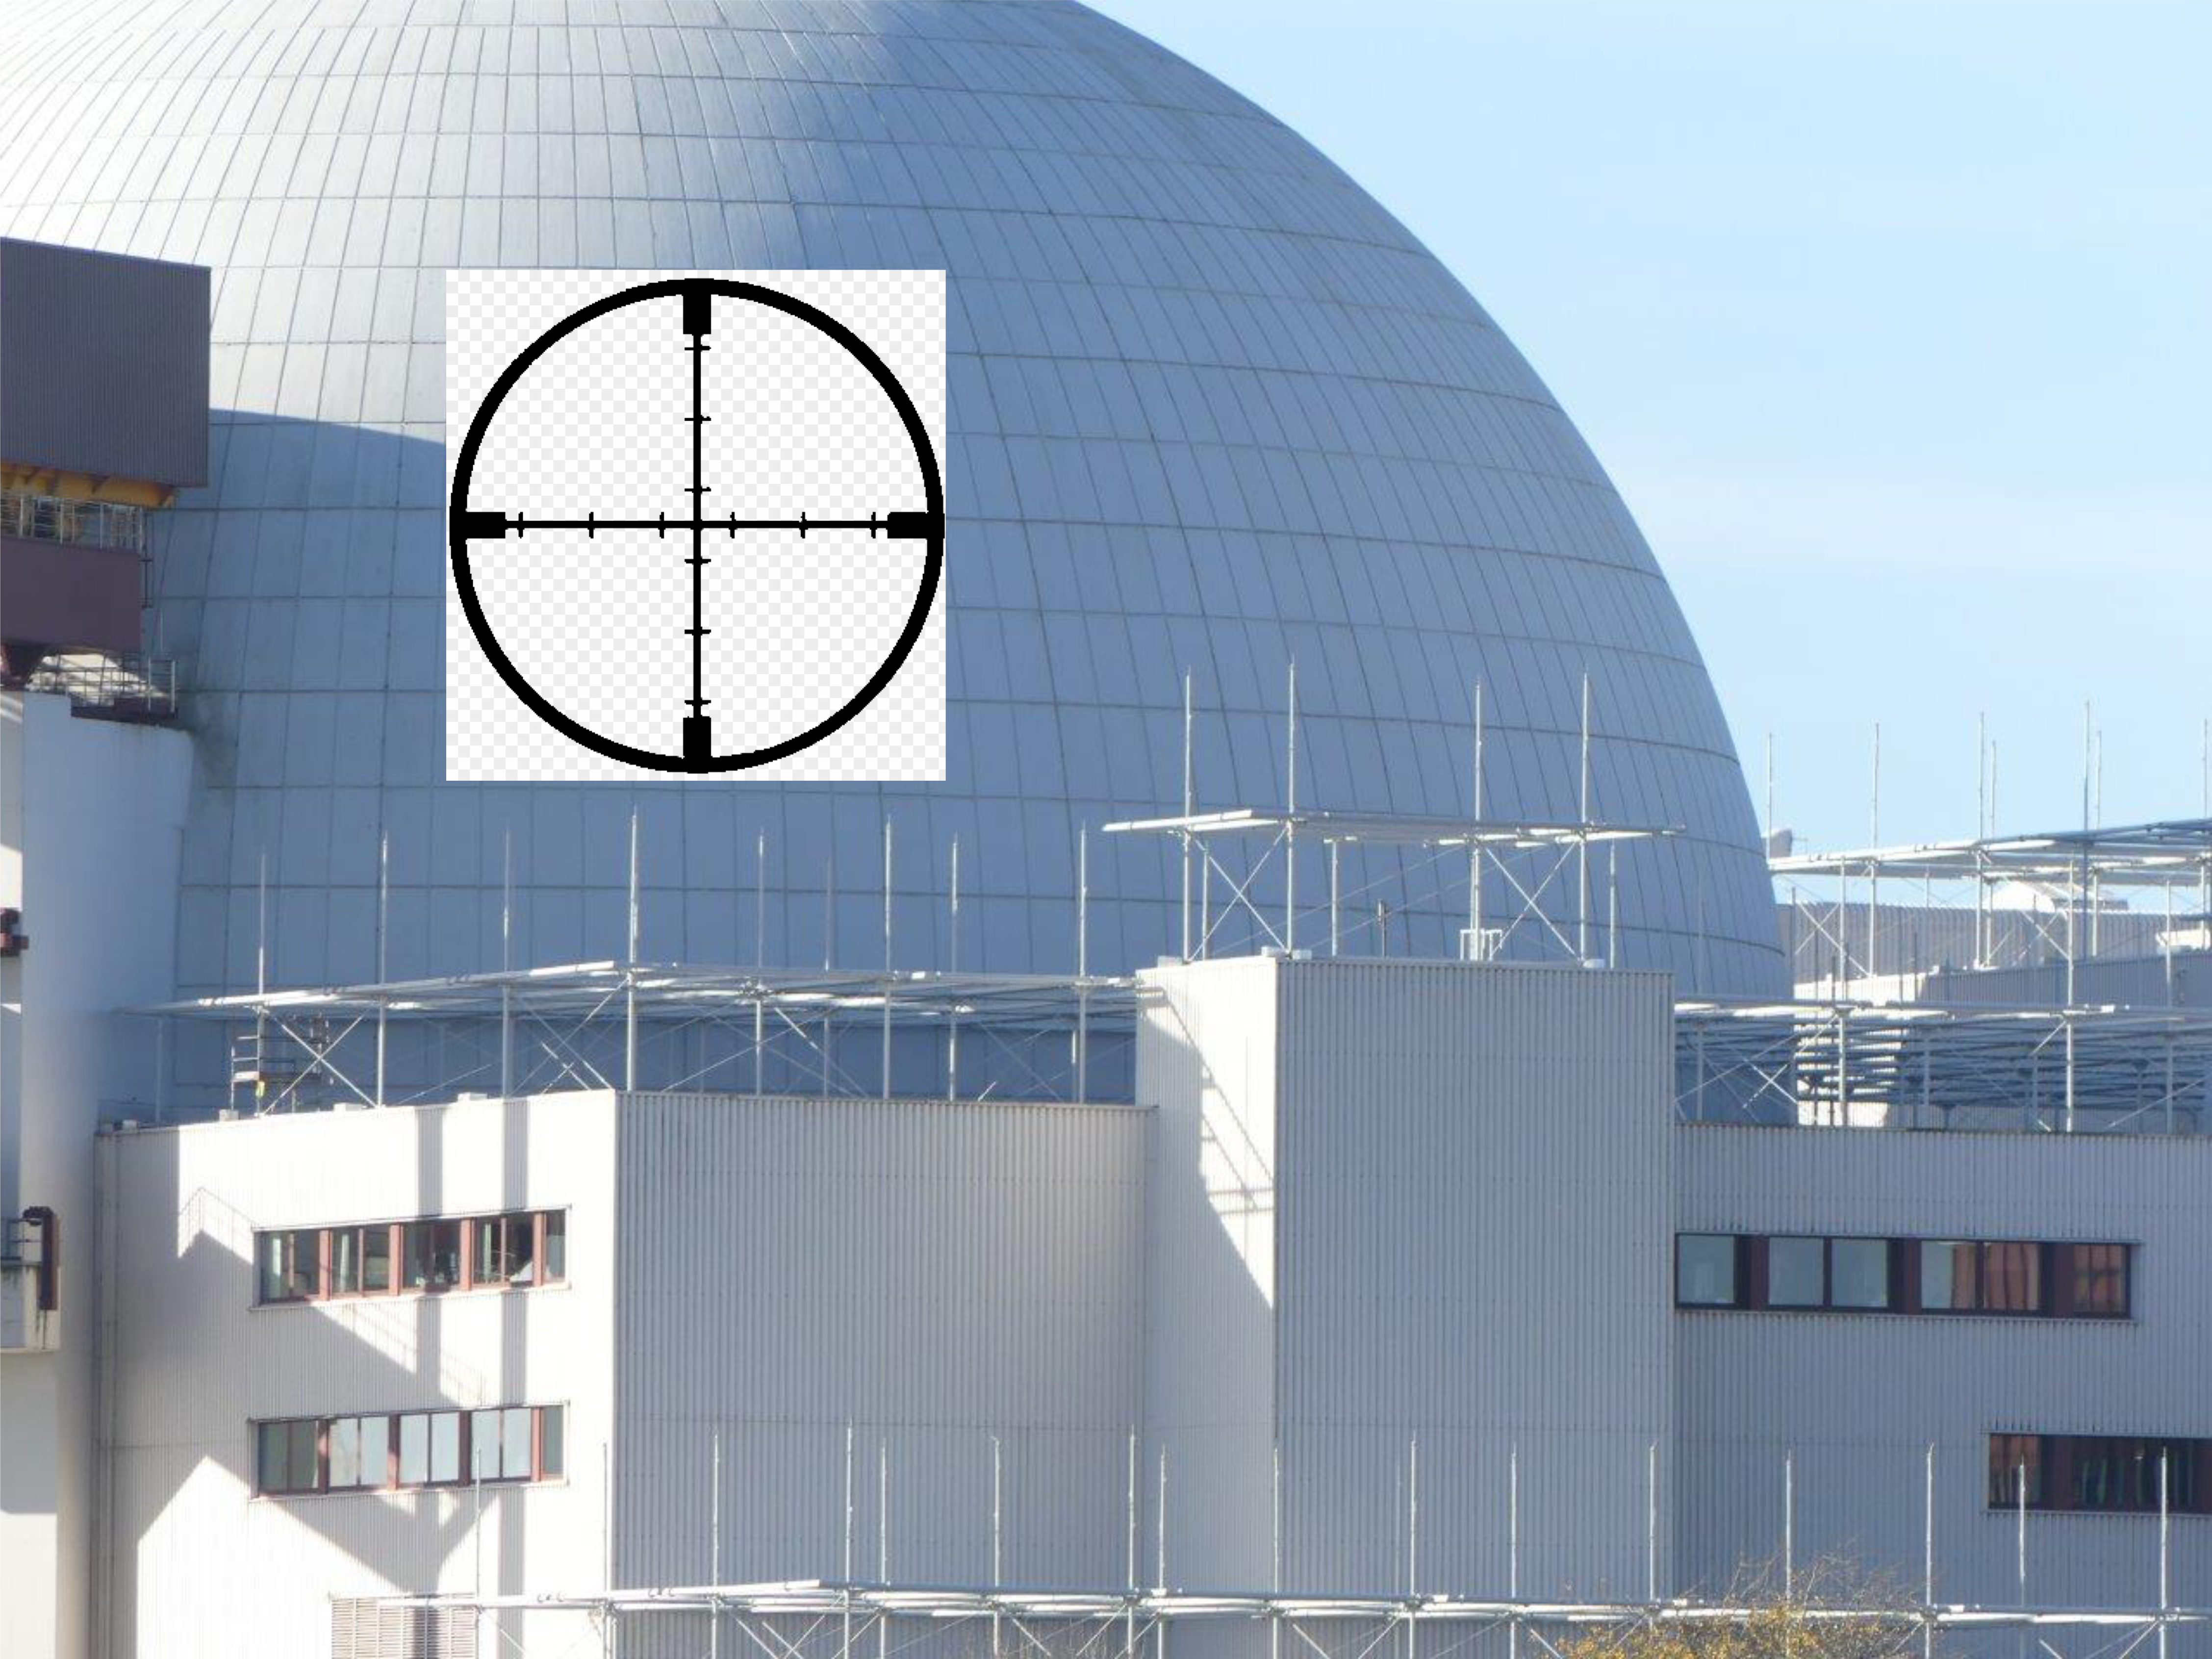 Atomkraftwerke als Atomwaffen – Über Störmaßnahmen und sonstige Einwirkungen – die nicht verteidigungsfähig sind!